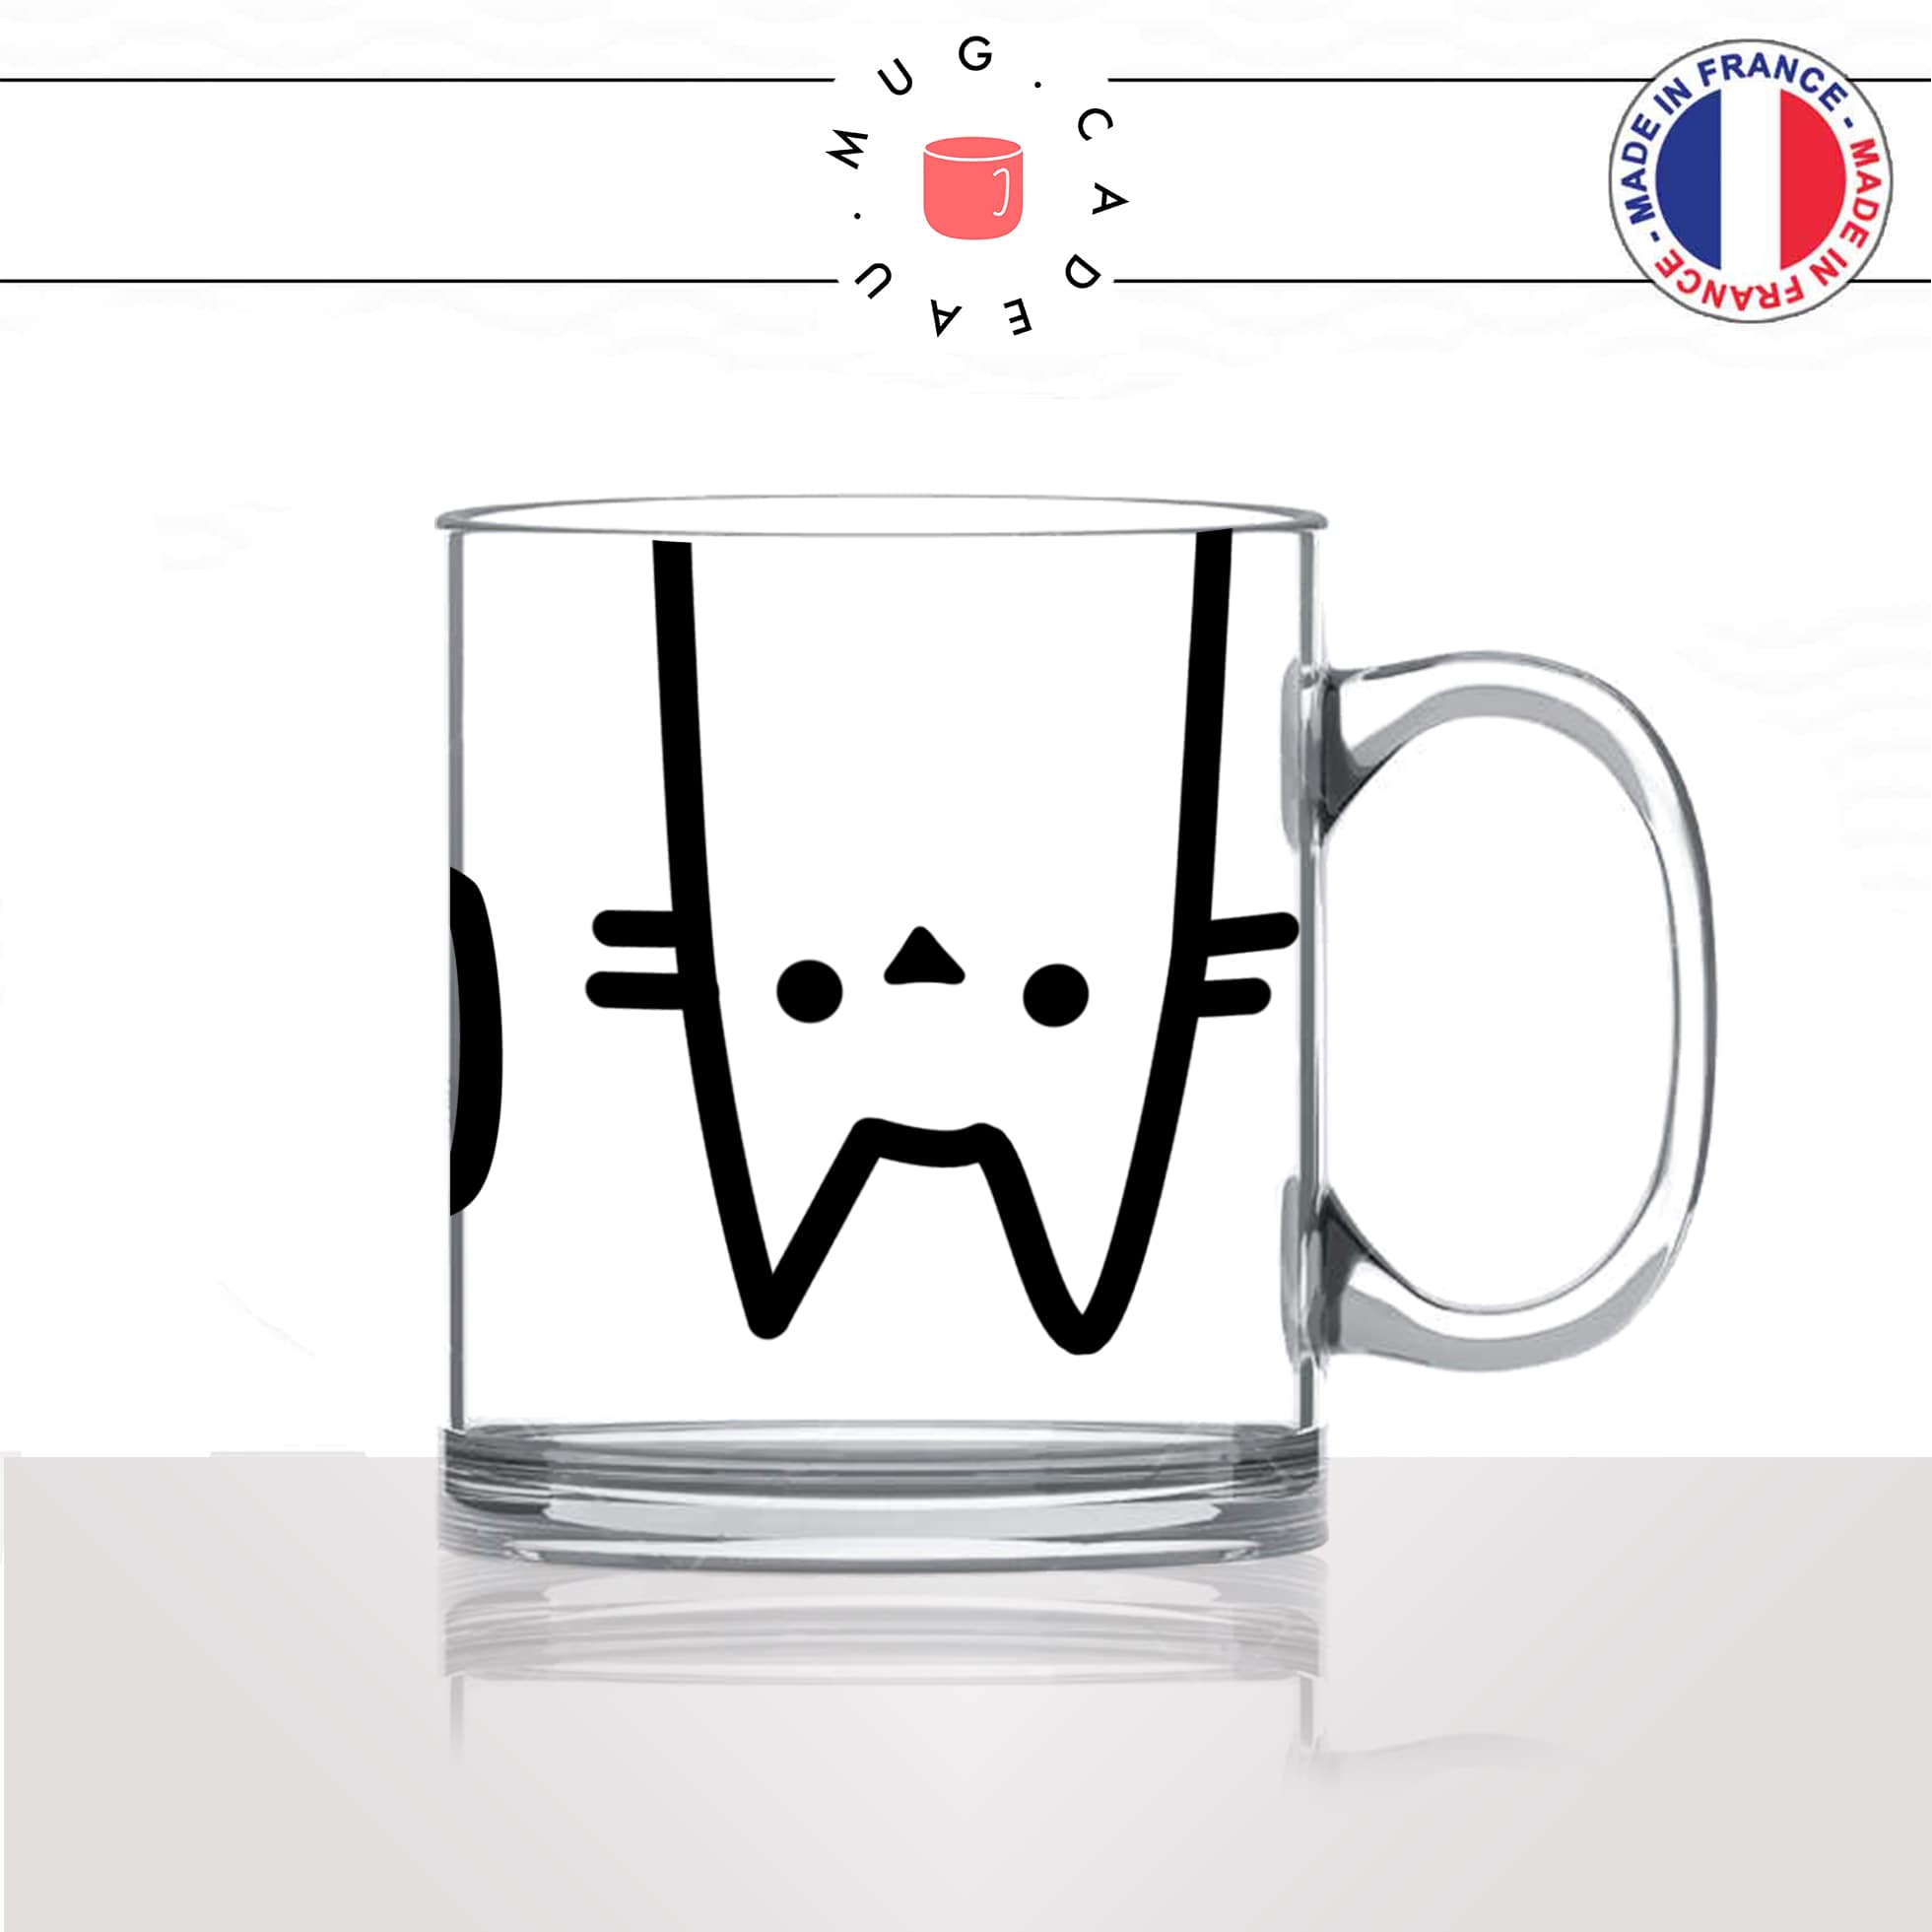 mug-tasse-en-verre-transparent-meow-miaou-tete-moustache-chat-mignon-animal-chaton-noir-fun-café-thé-idée-cadeau-original-personnalisé2-min